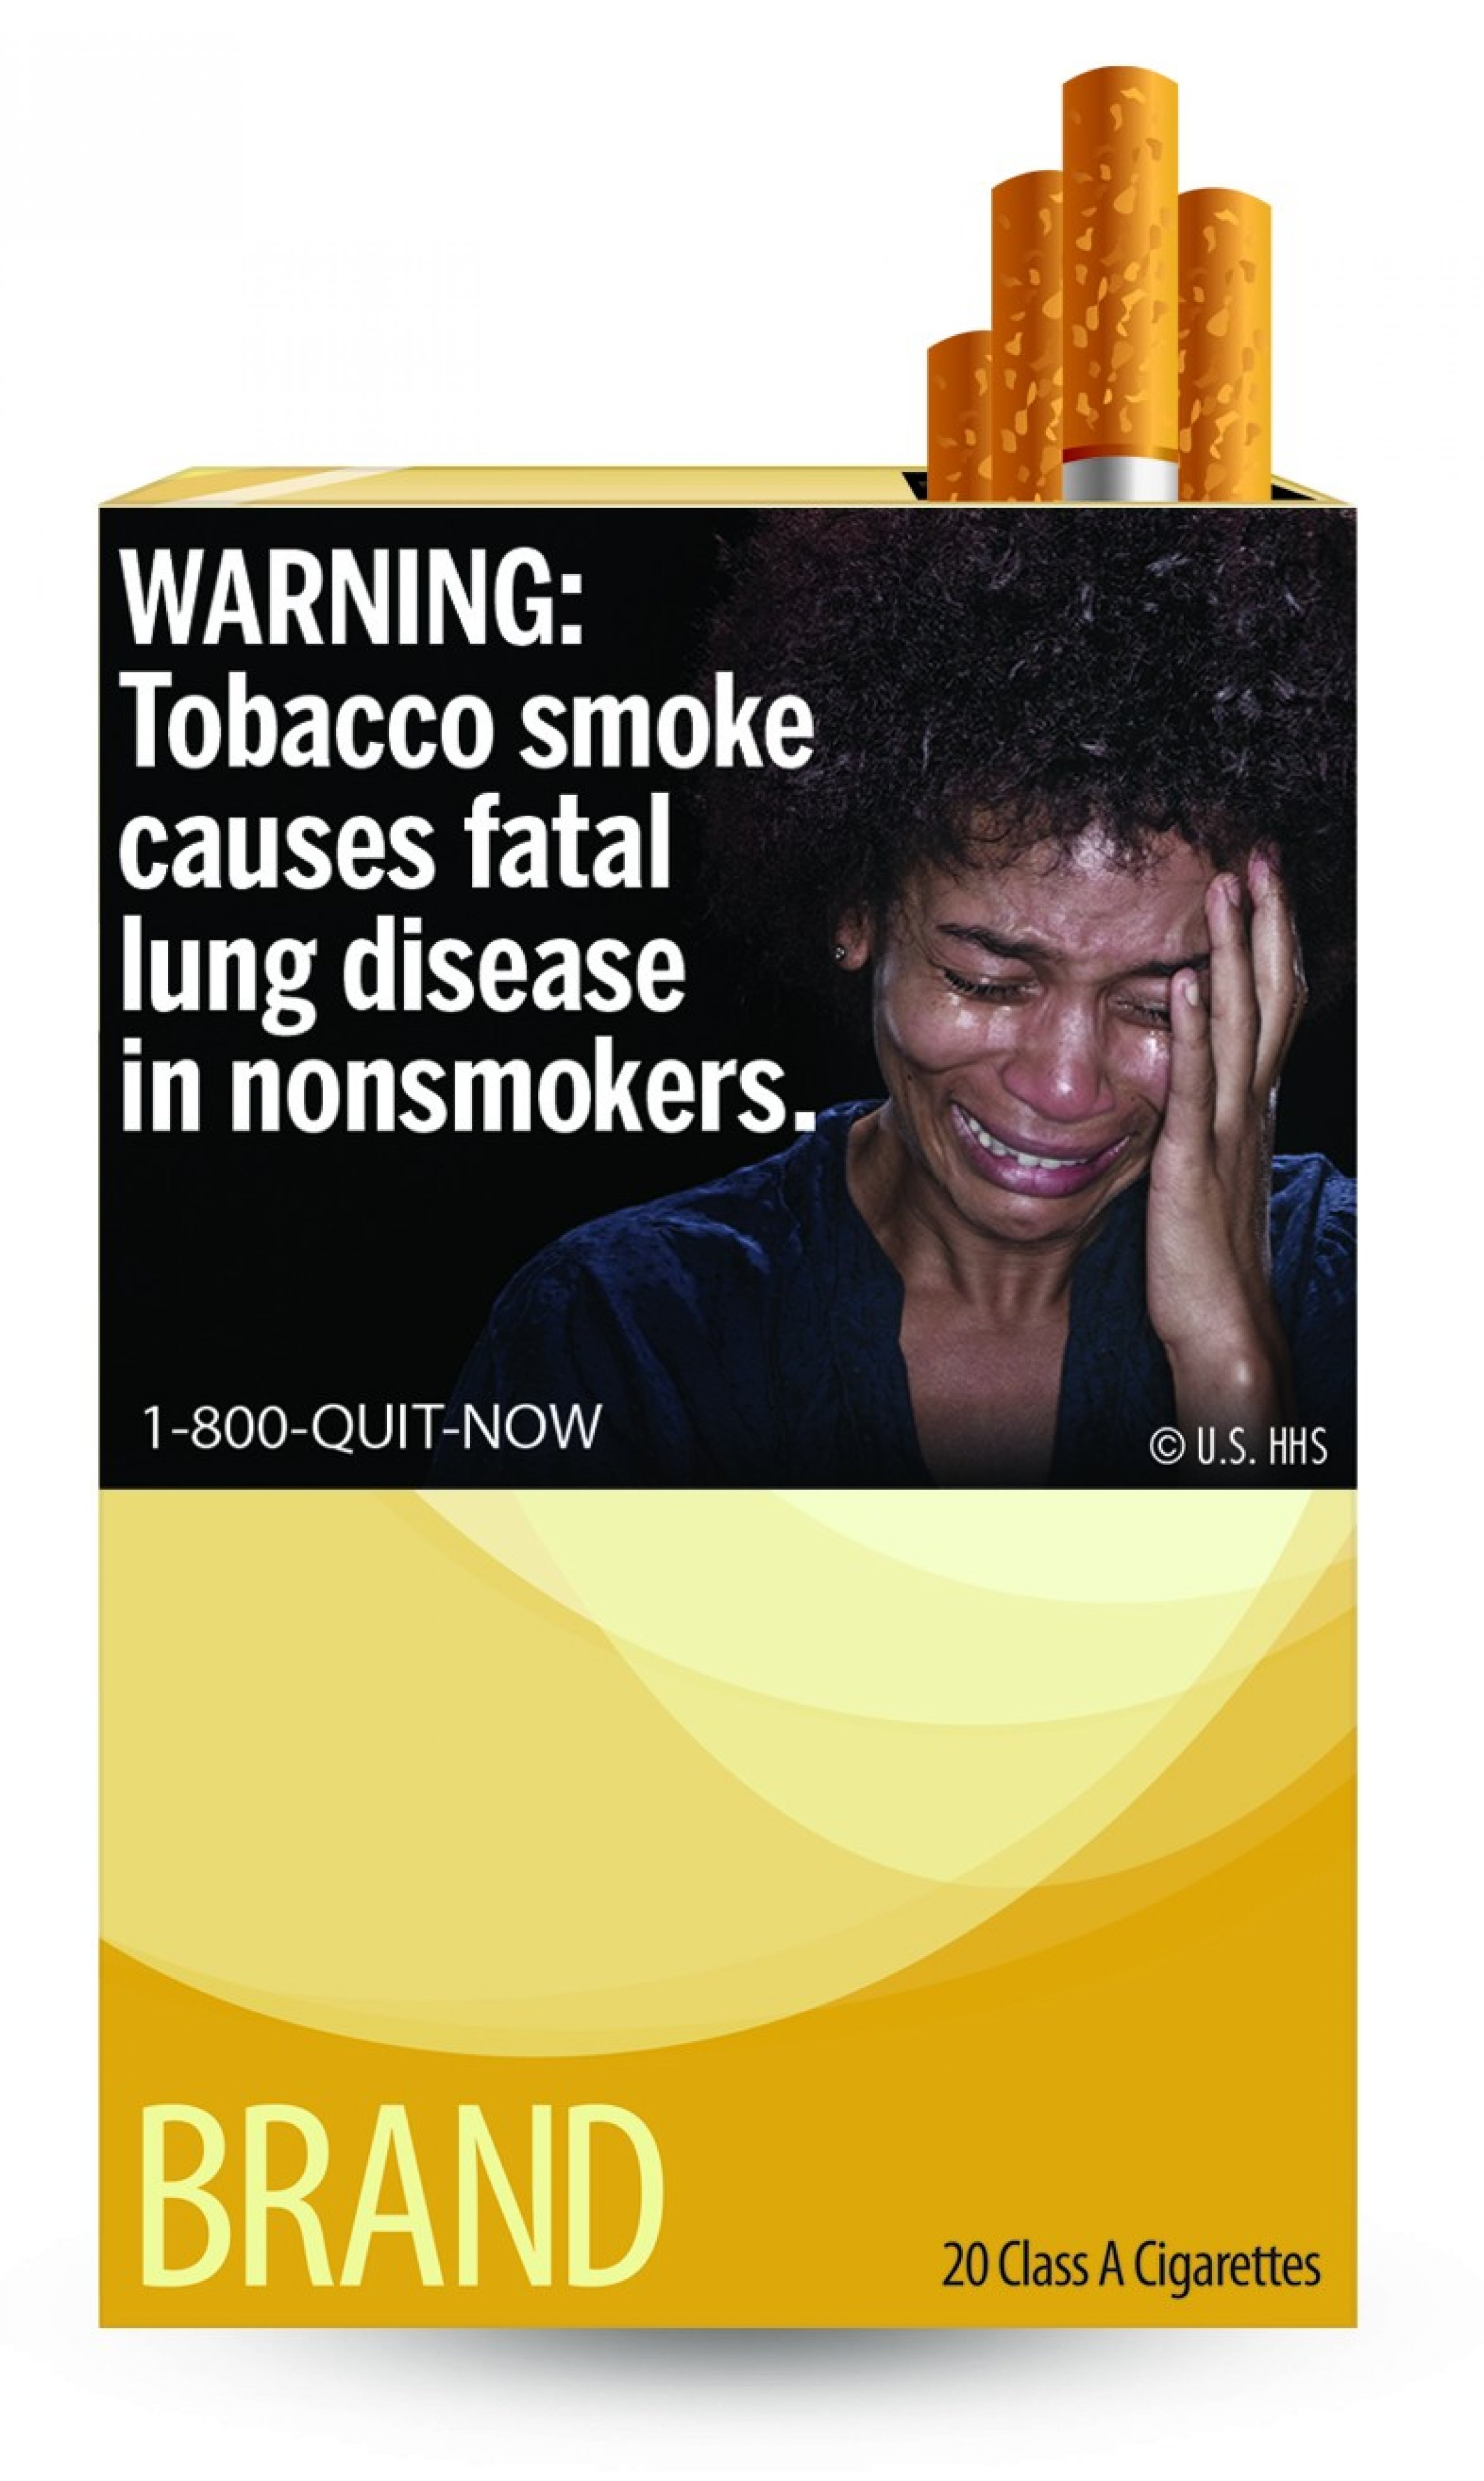 FDA unveils final cigarette warning labels